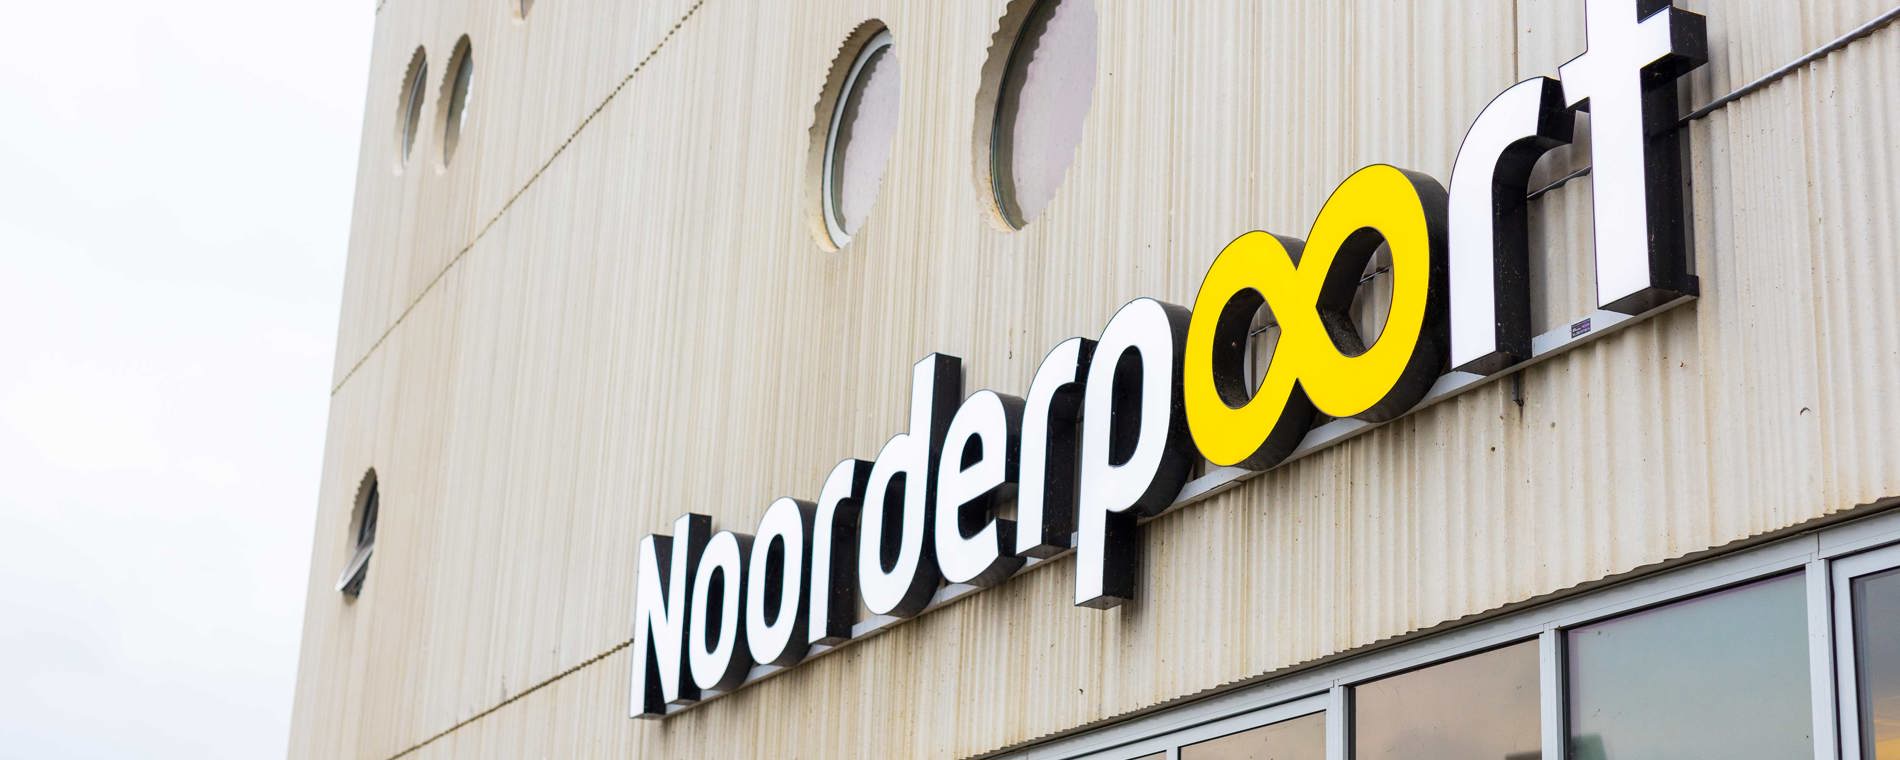 Noorderpoort Logo Gebouw 01